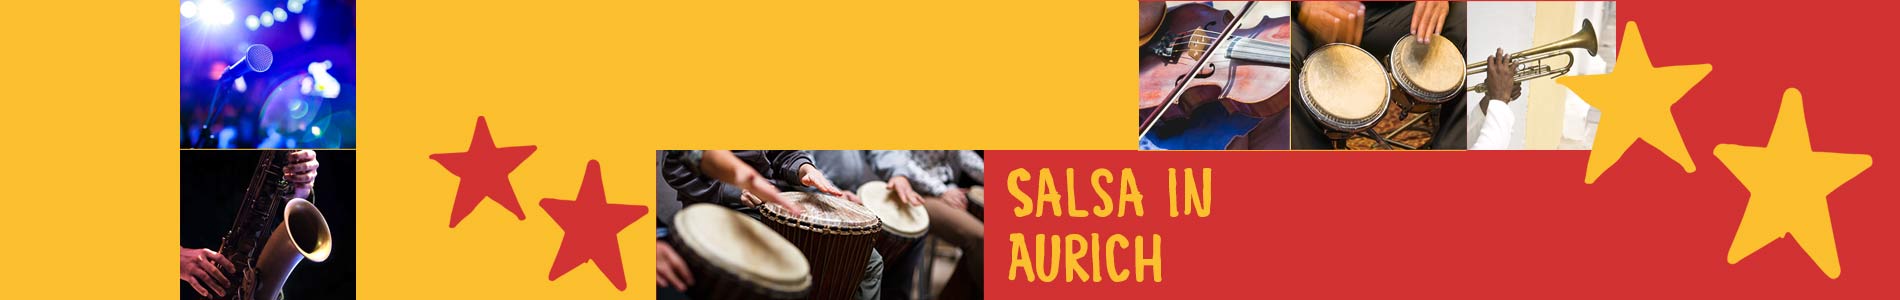 Salsa in Aurich – Salsa lernen und tanzen, Tanzkurse, Partys, Veranstaltungen